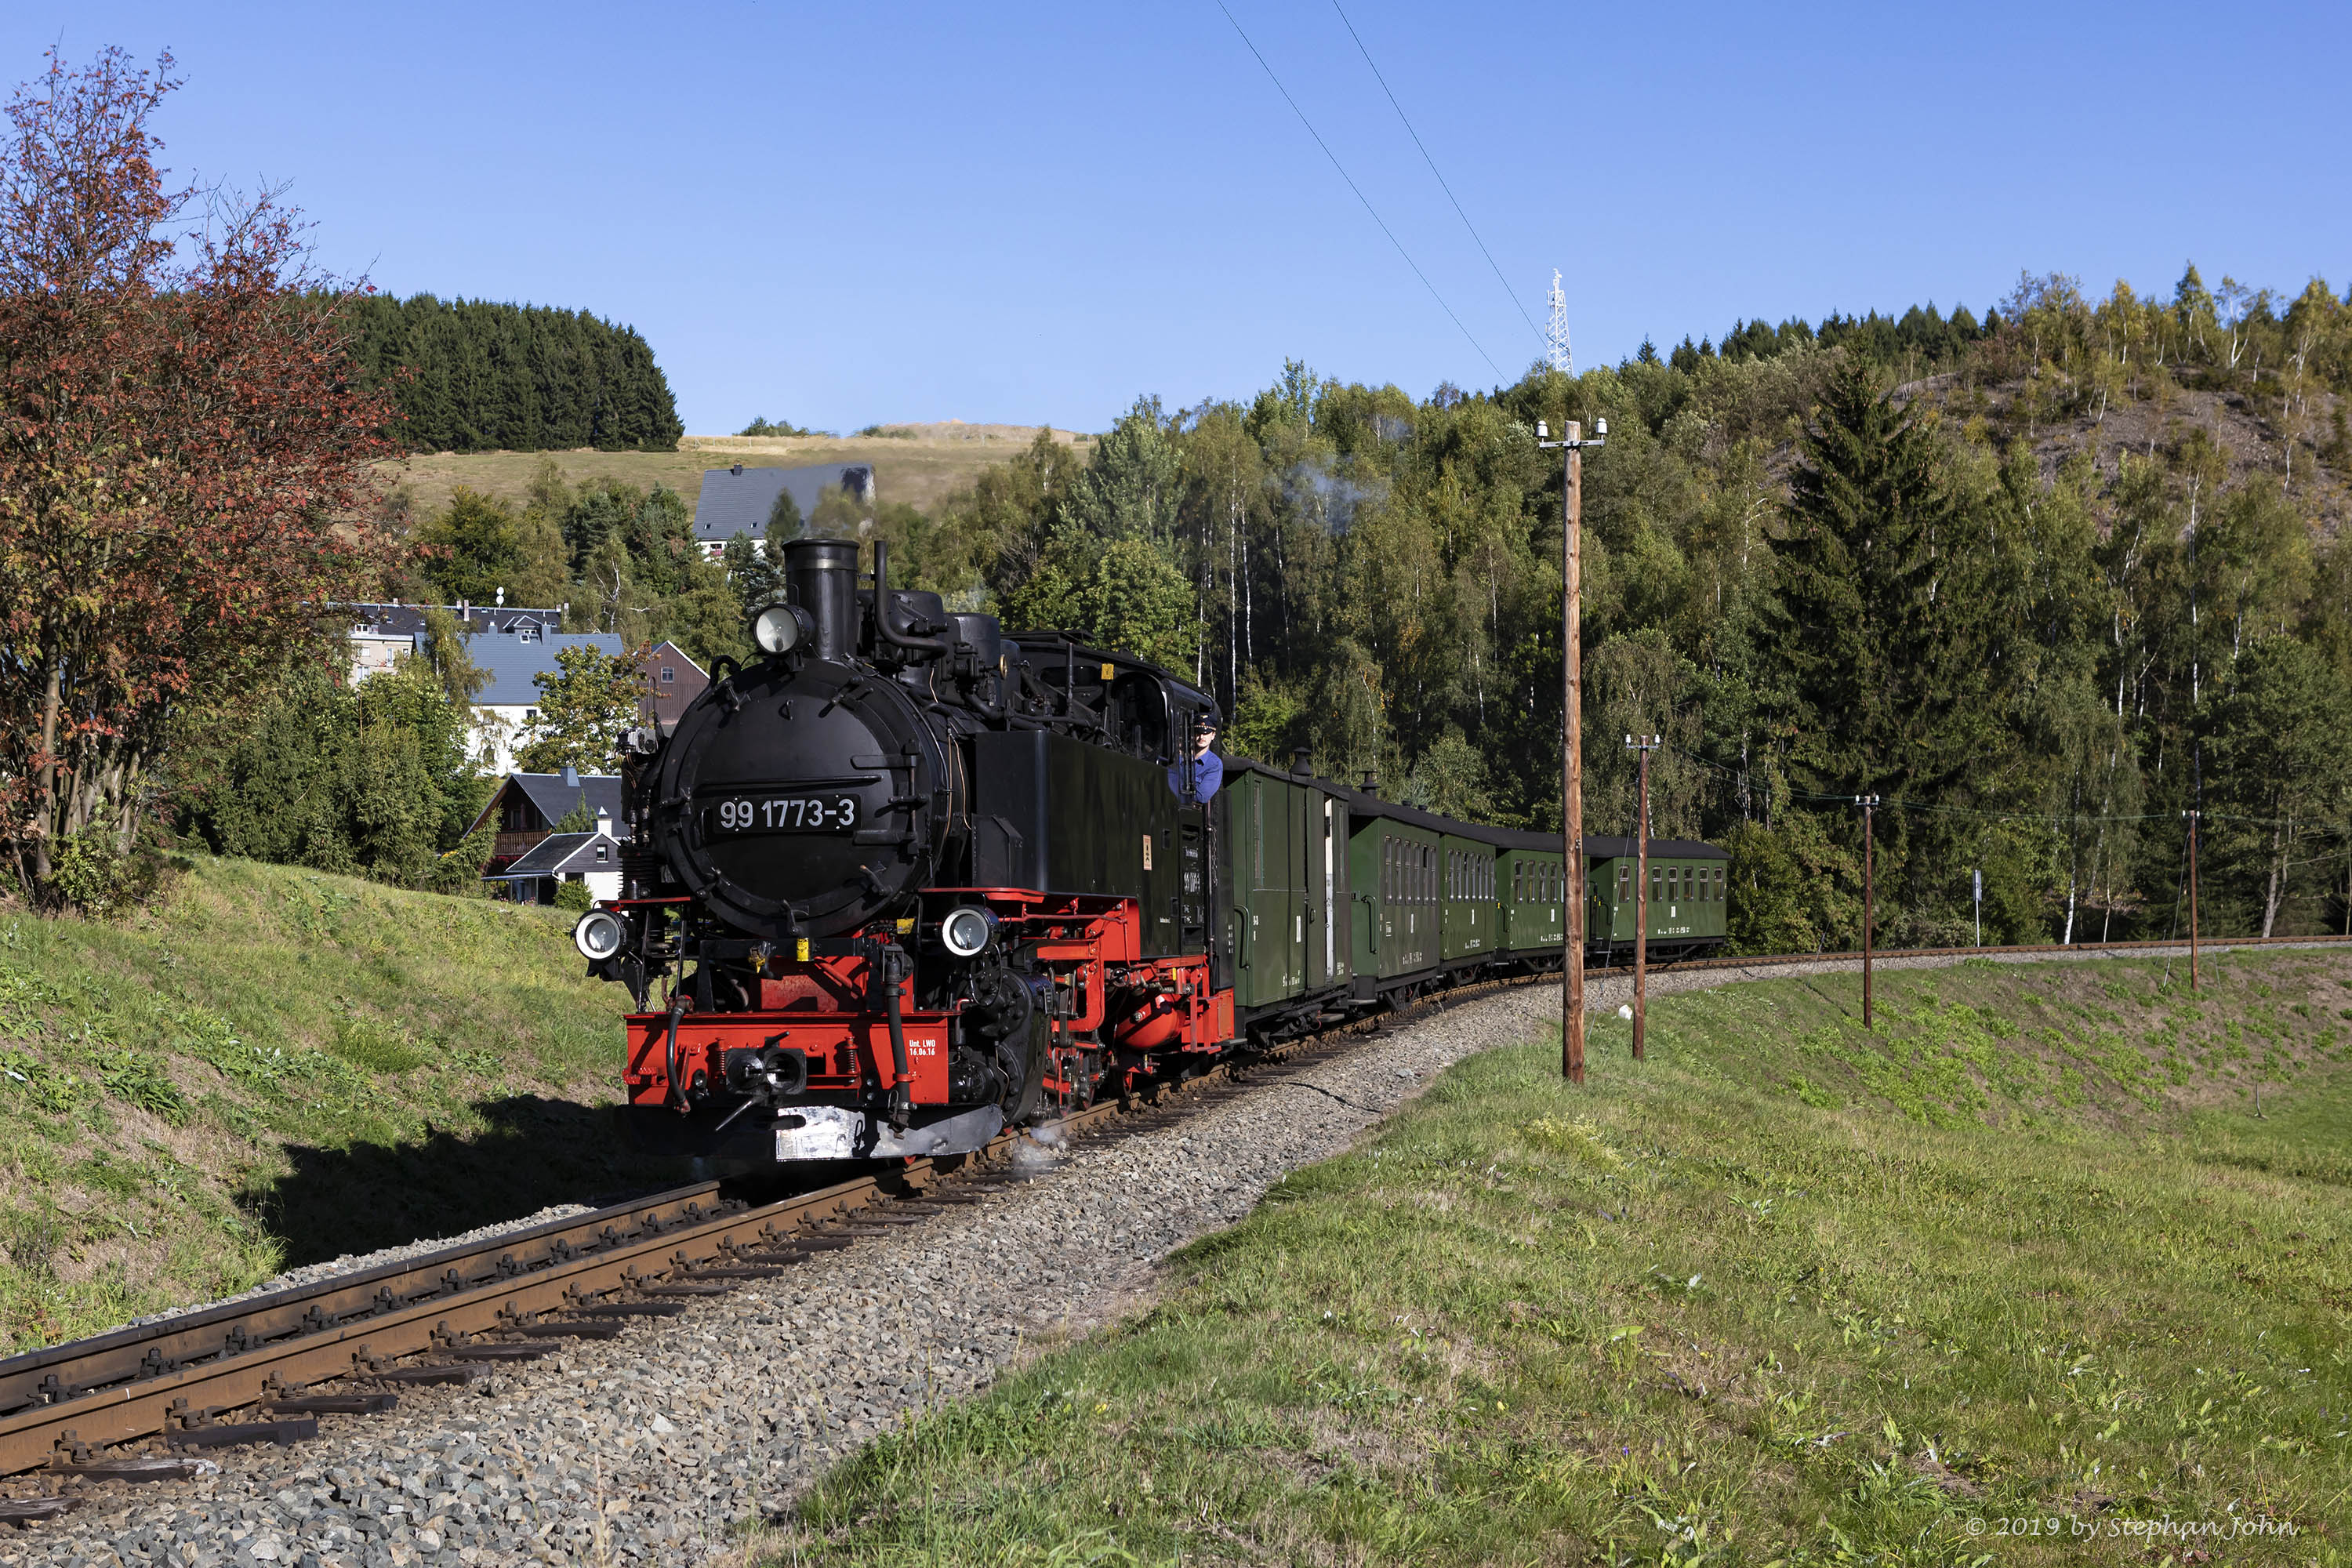 Zug 9005 mit Lok 99 1773-3 fährt mit dem Personenzug in Richtung Oberwiesenthal und hat gerade die Kurve an der Bärenlohe hintersich gelassen.